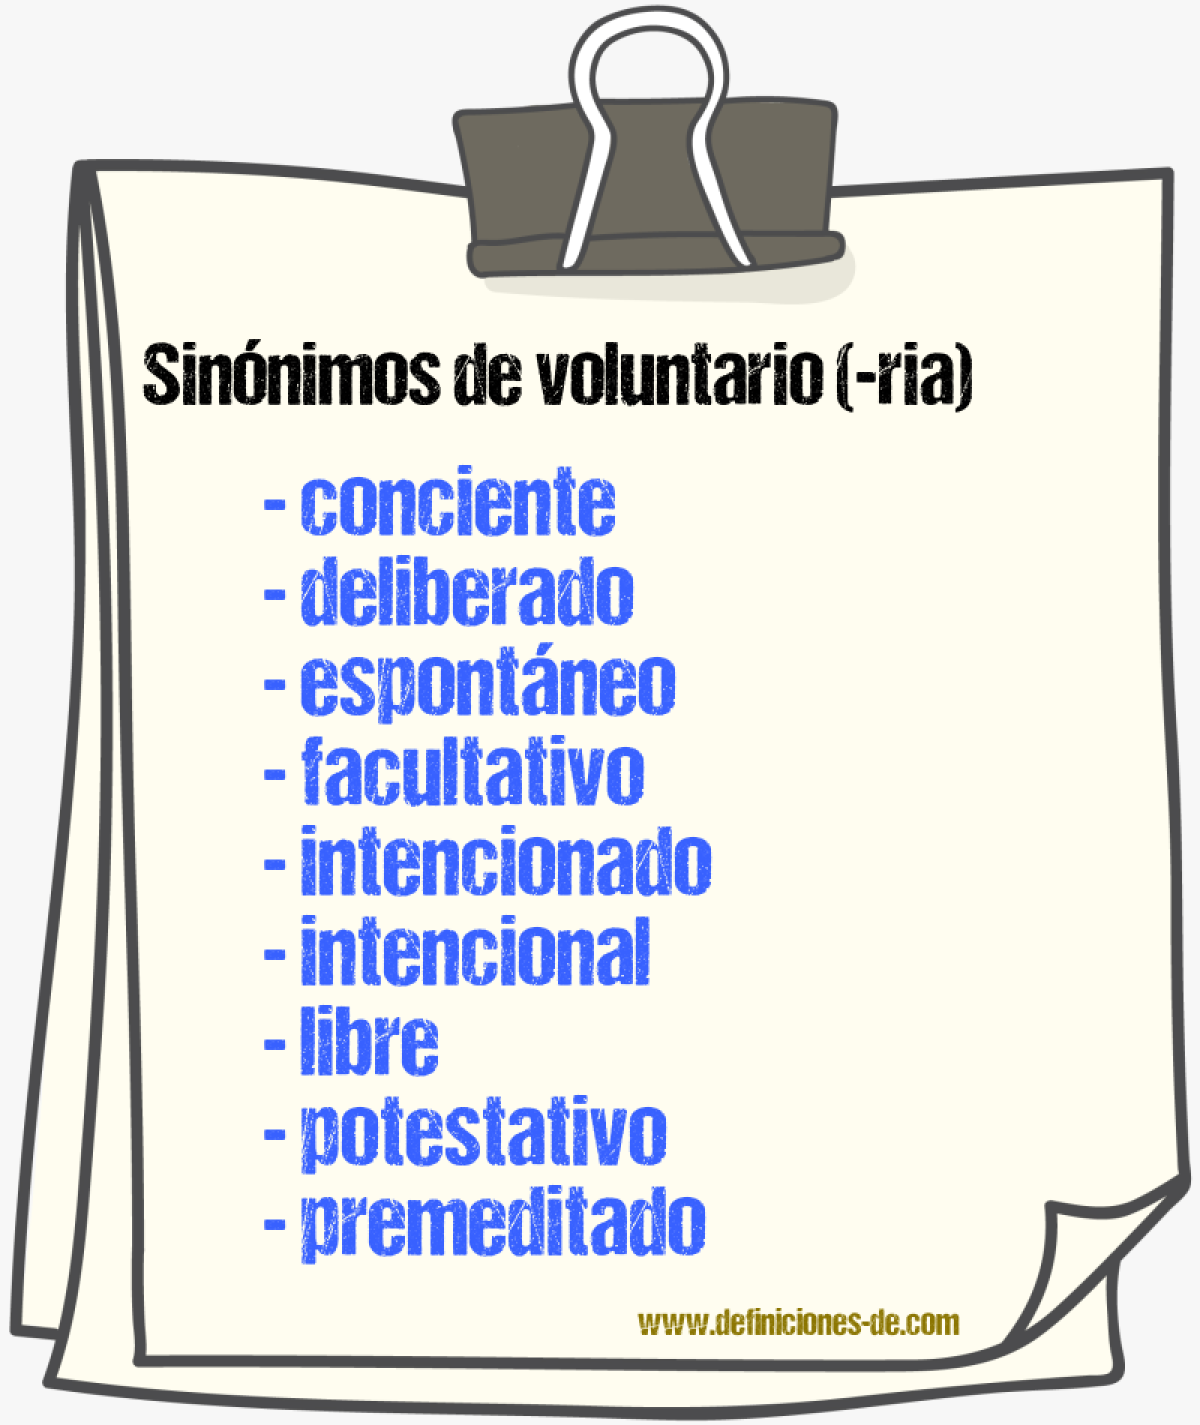 Sinónimos de voluntario